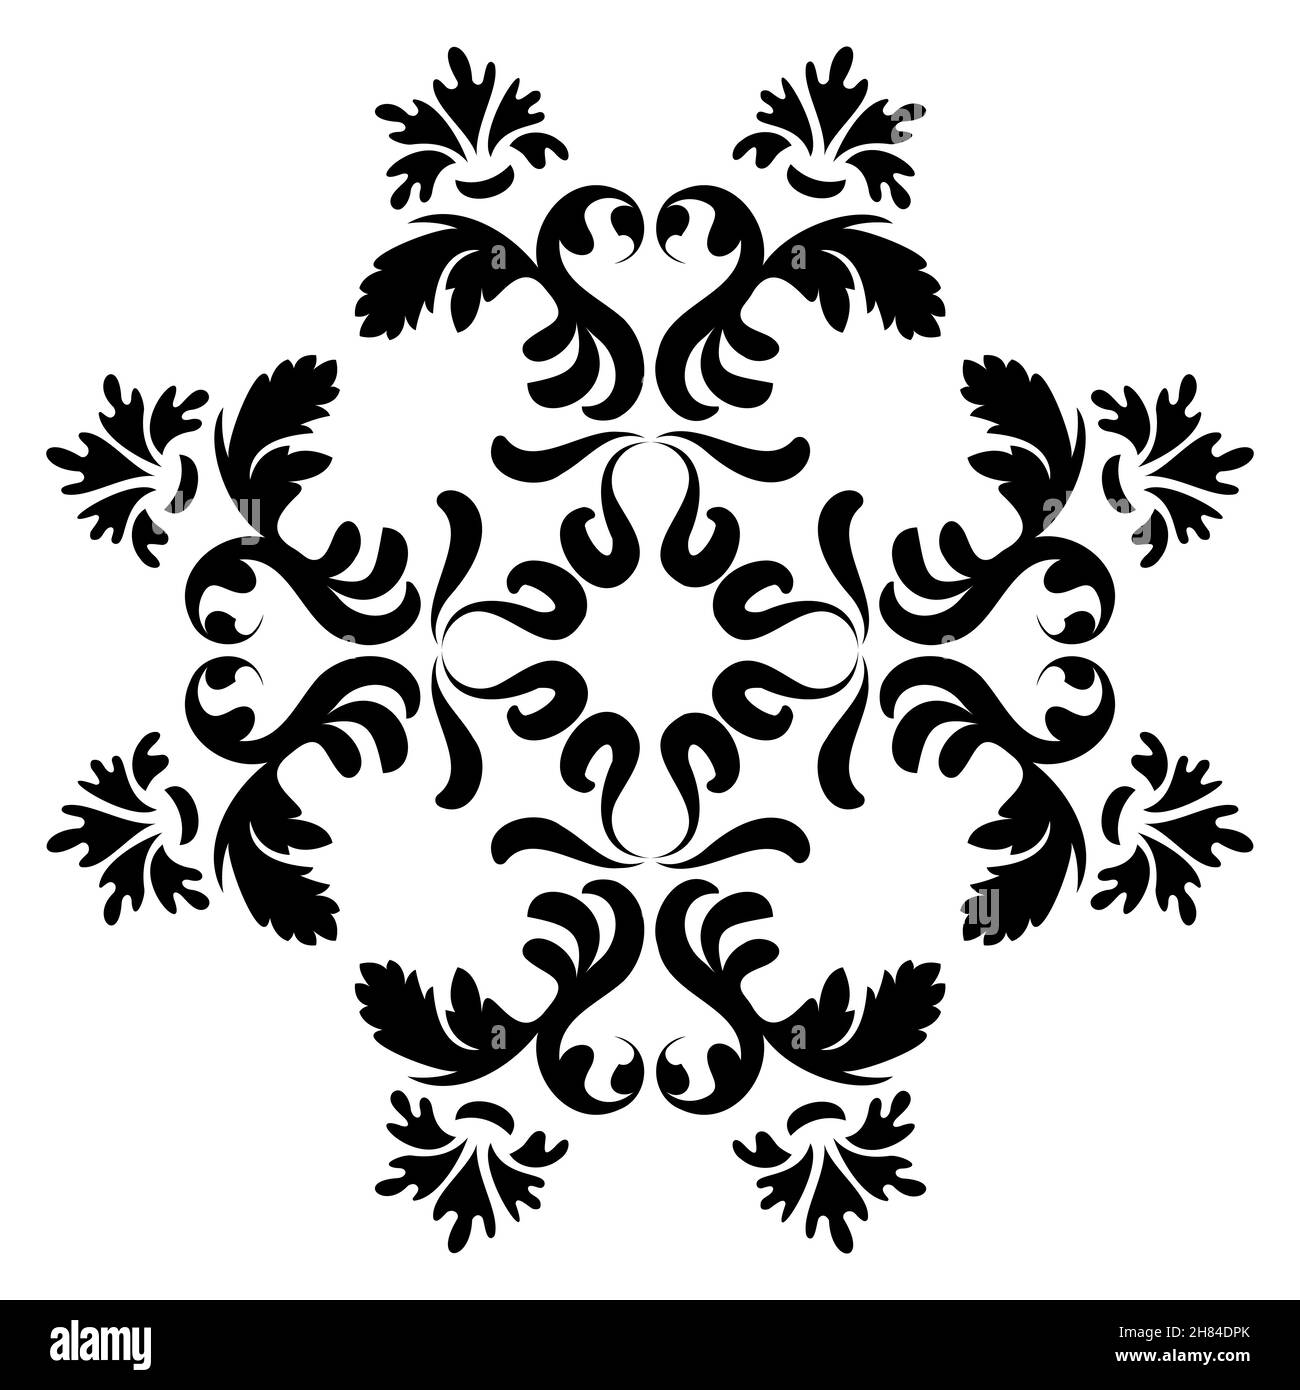 Mandala de fleur.Motif circulaire antique avec éléments floraux.Noir et blanc.Vecteur. Illustration de Vecteur